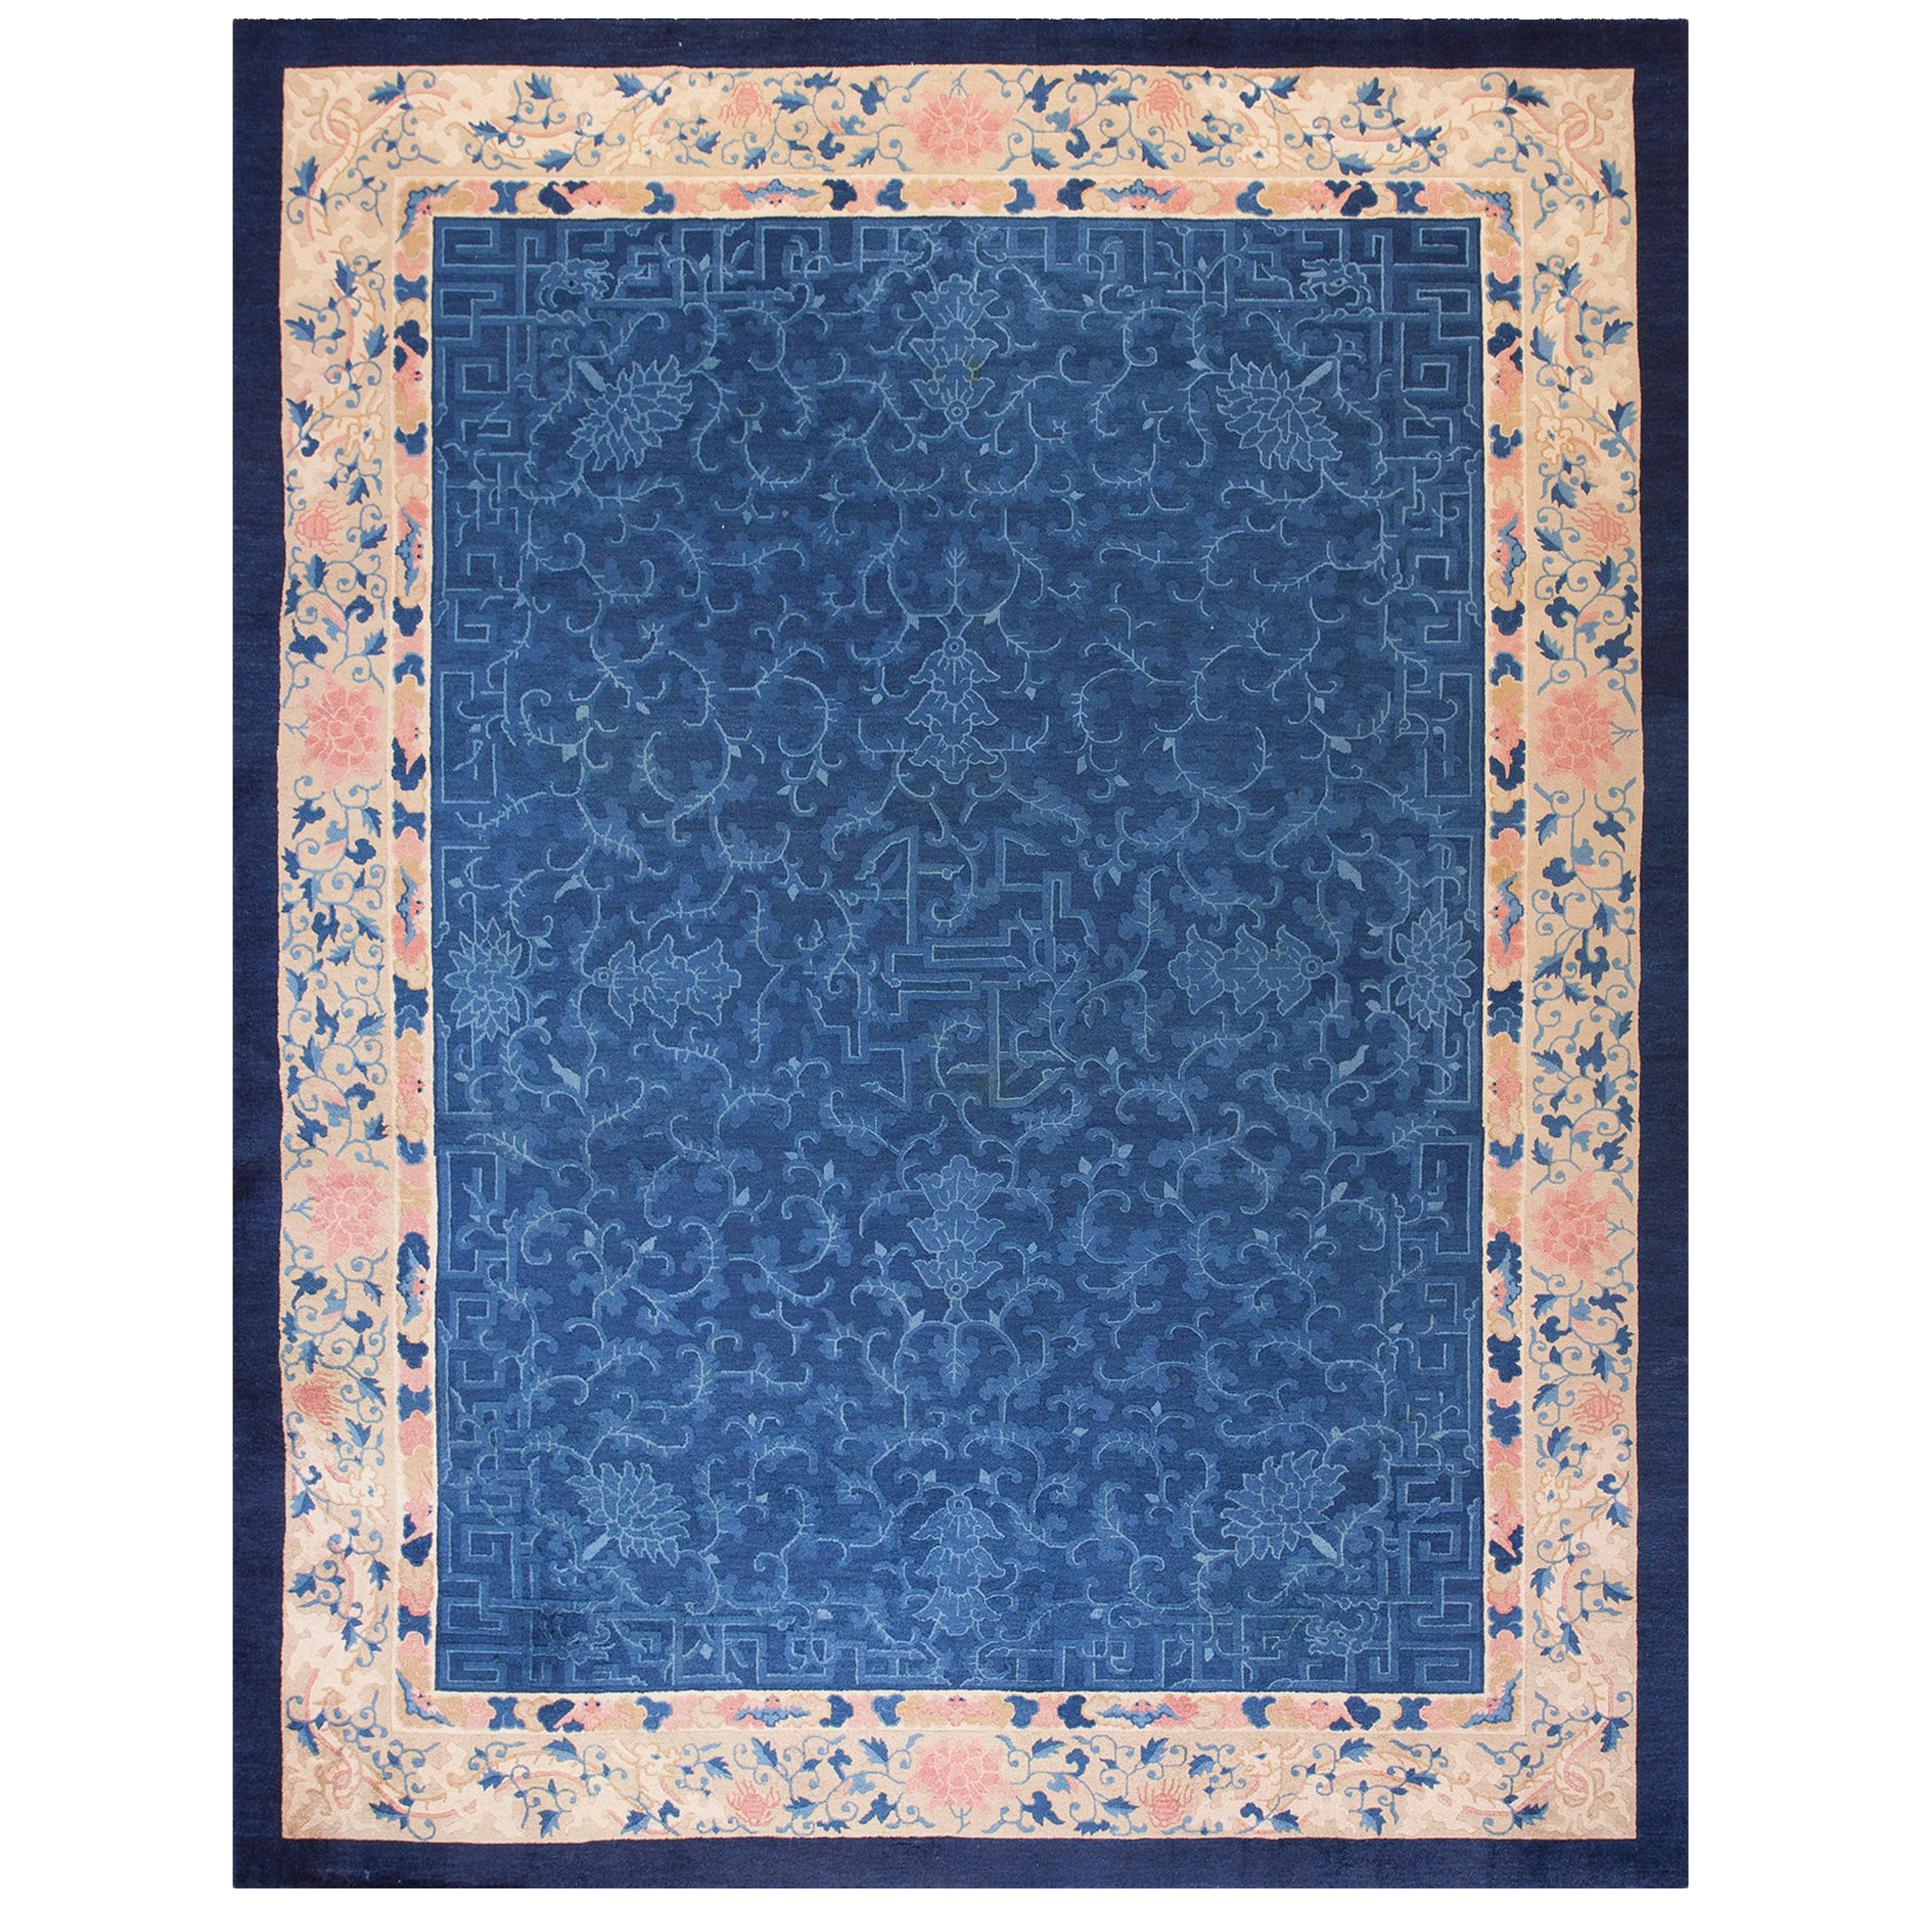 Chinesischer Peking-Teppich des frühen 20. Jahrhunderts ( 9' x 11'9""" - 275 x 360 cm)